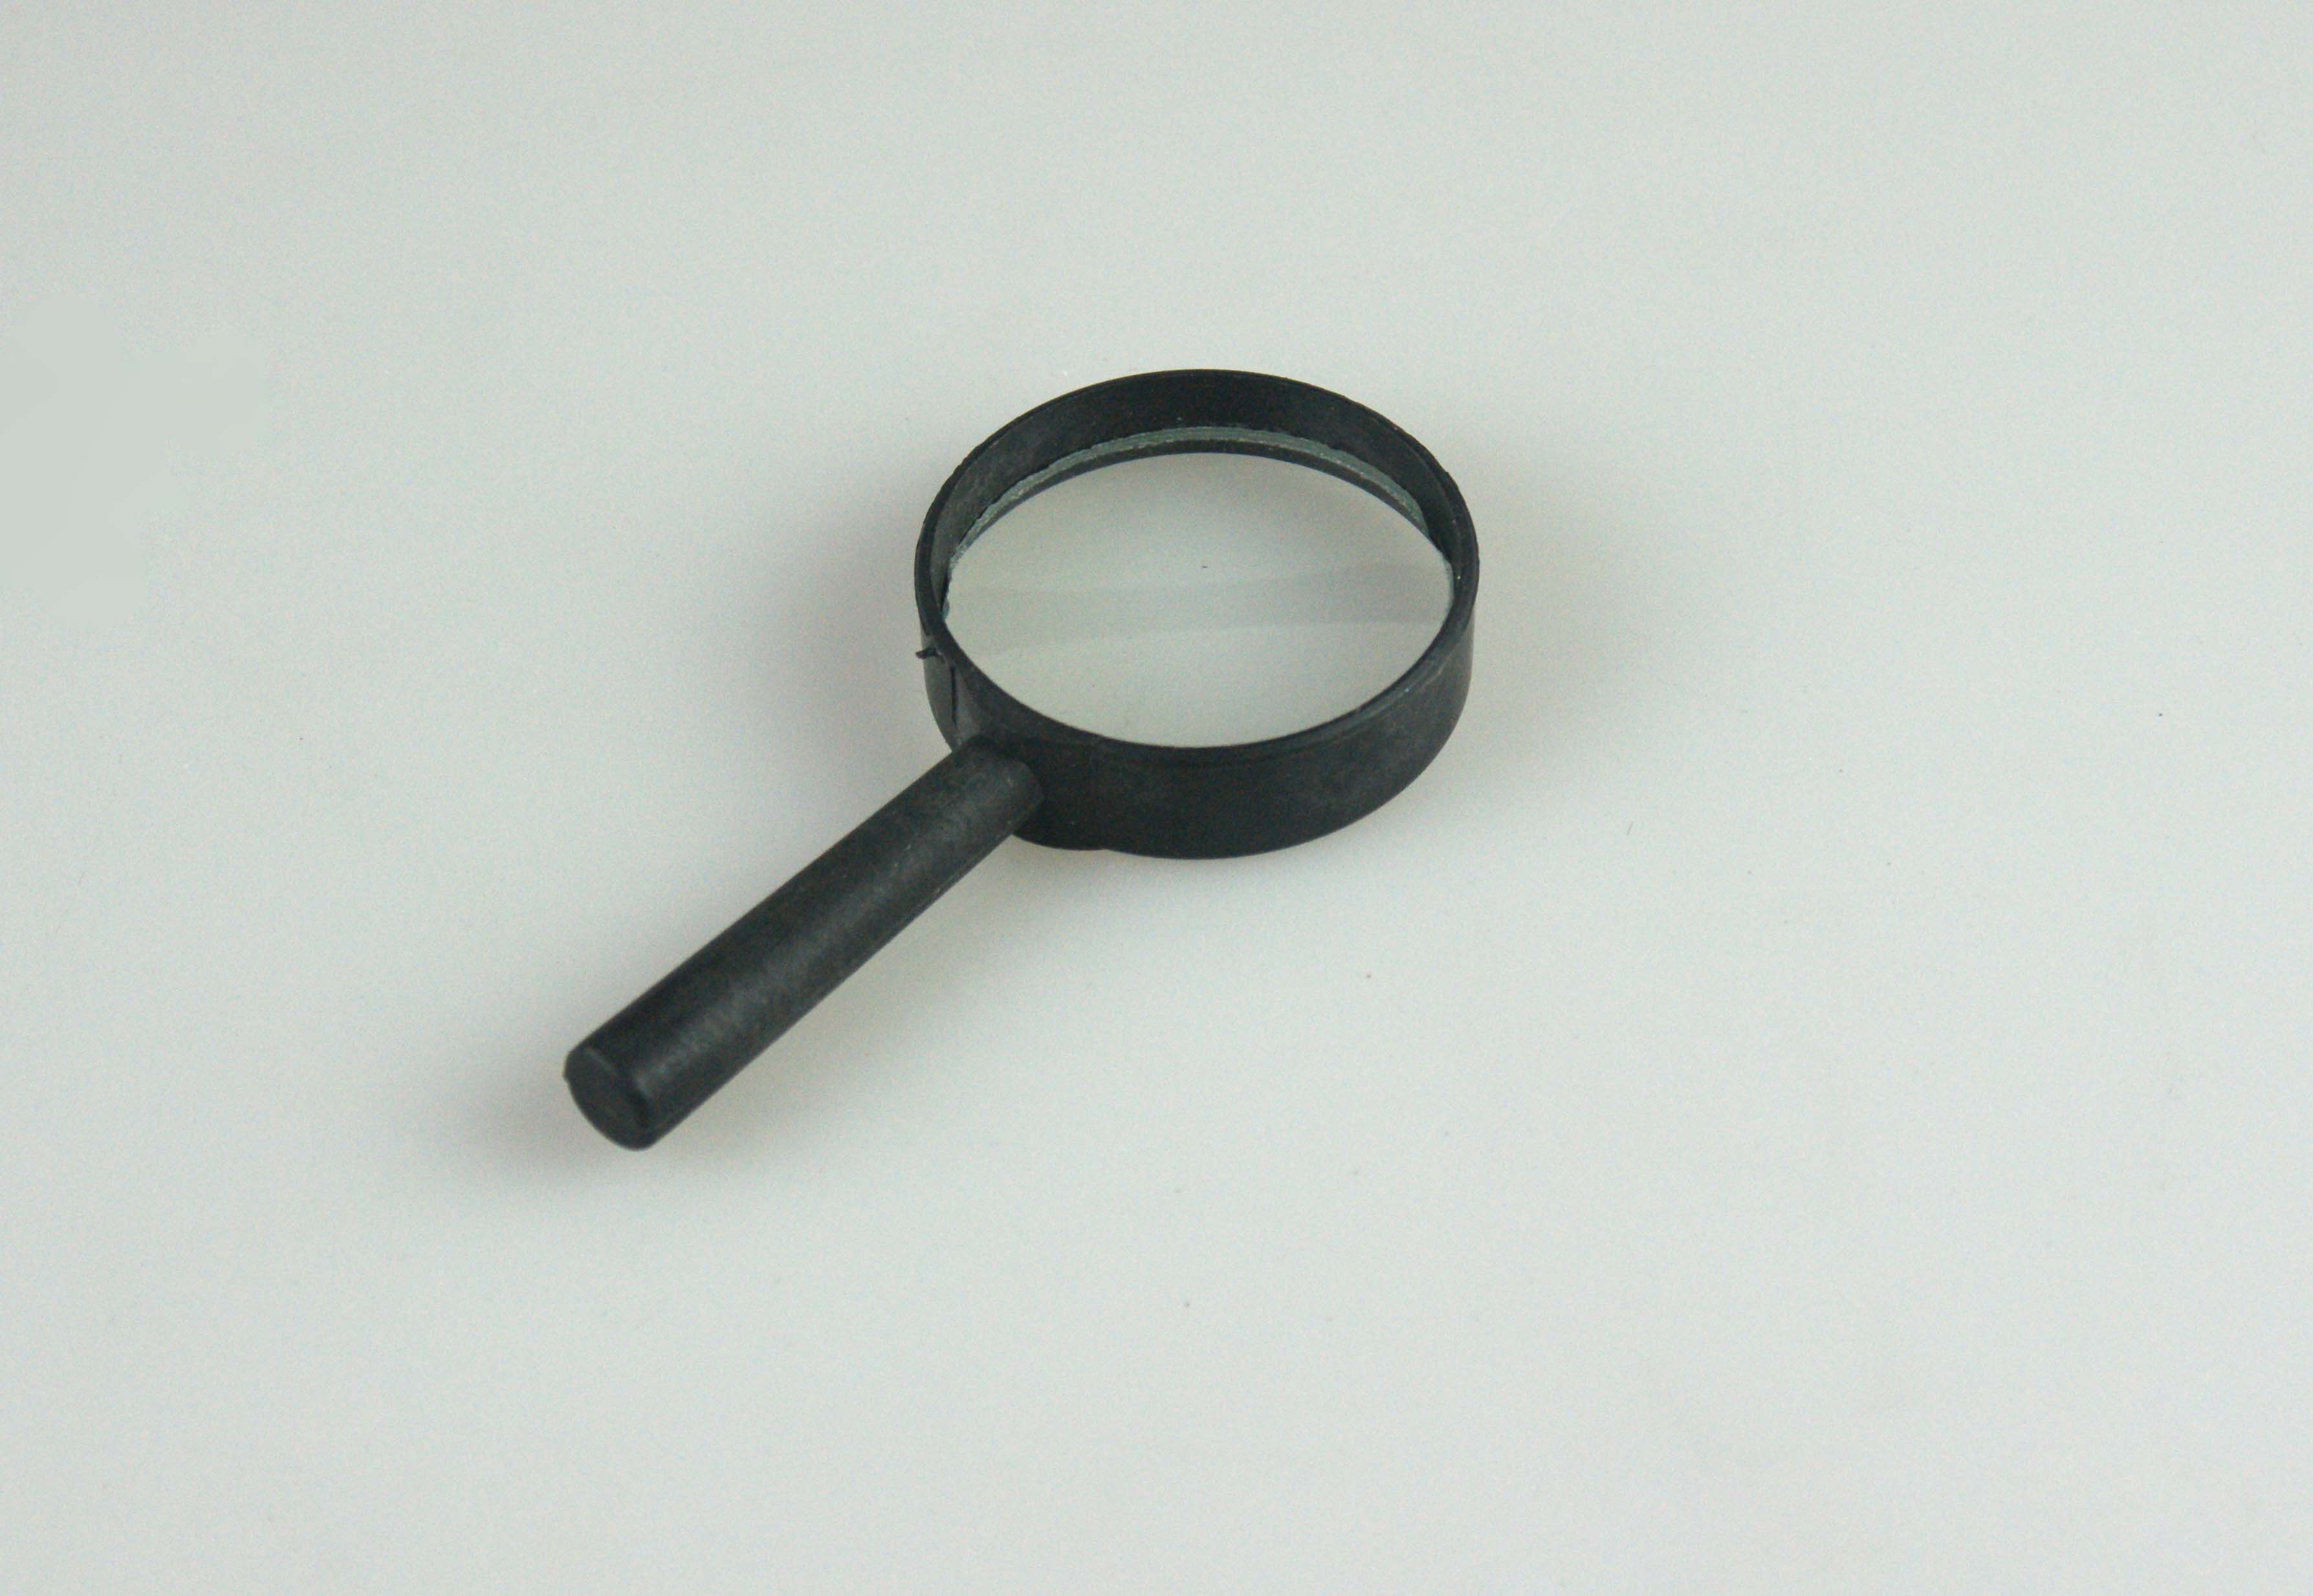 liang jing jing illumination magnifying glass